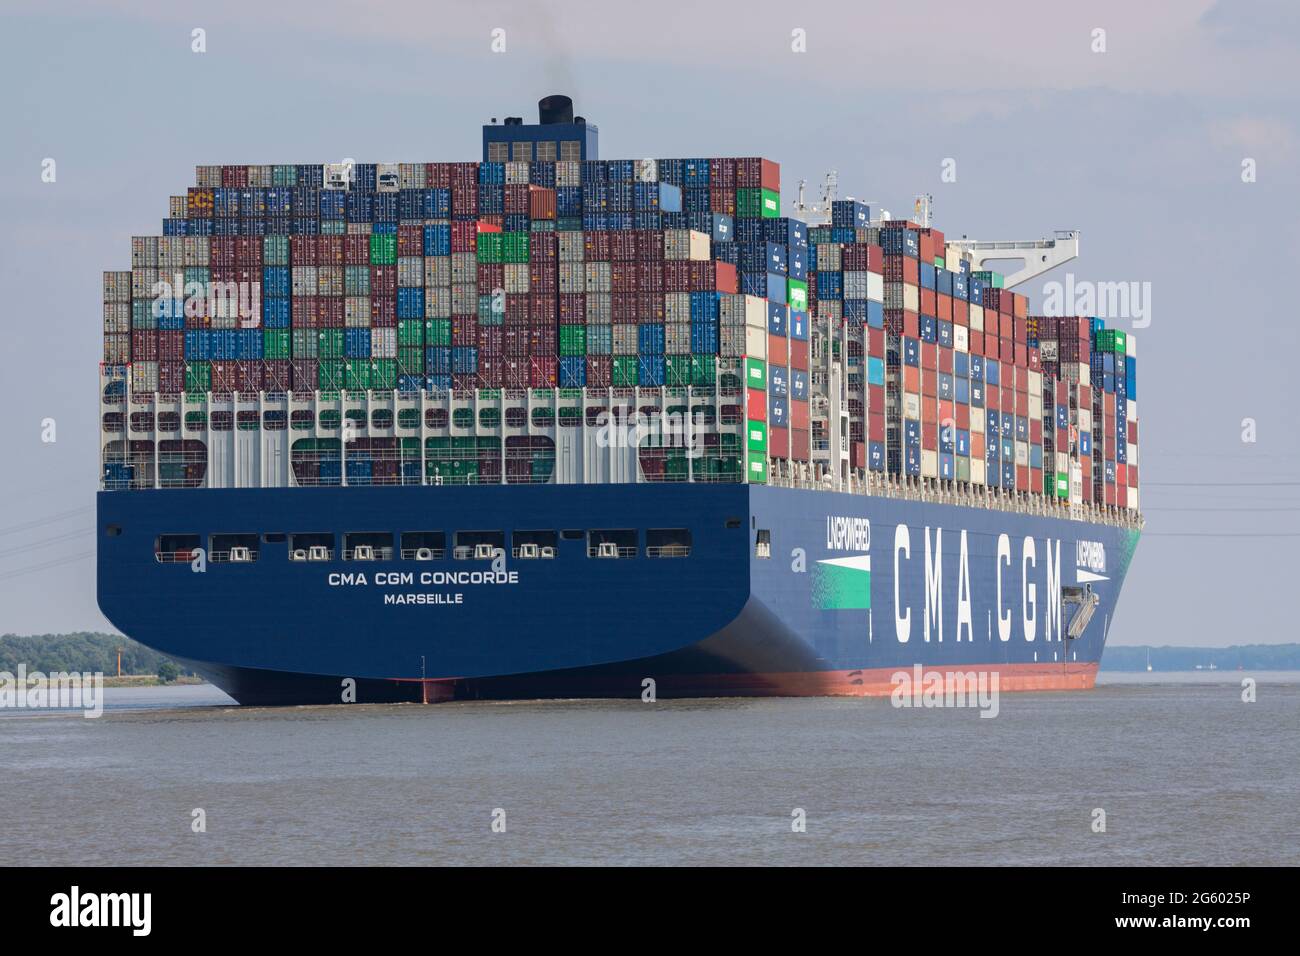 Stade, Deutschland - 25. Juni 2021: Heckansicht des Containerschiffes CMA CGM CONCORDE, eines von neun Schwesterschiffen und größten LNG-betriebenen Schiffen der Welt, Stockfoto